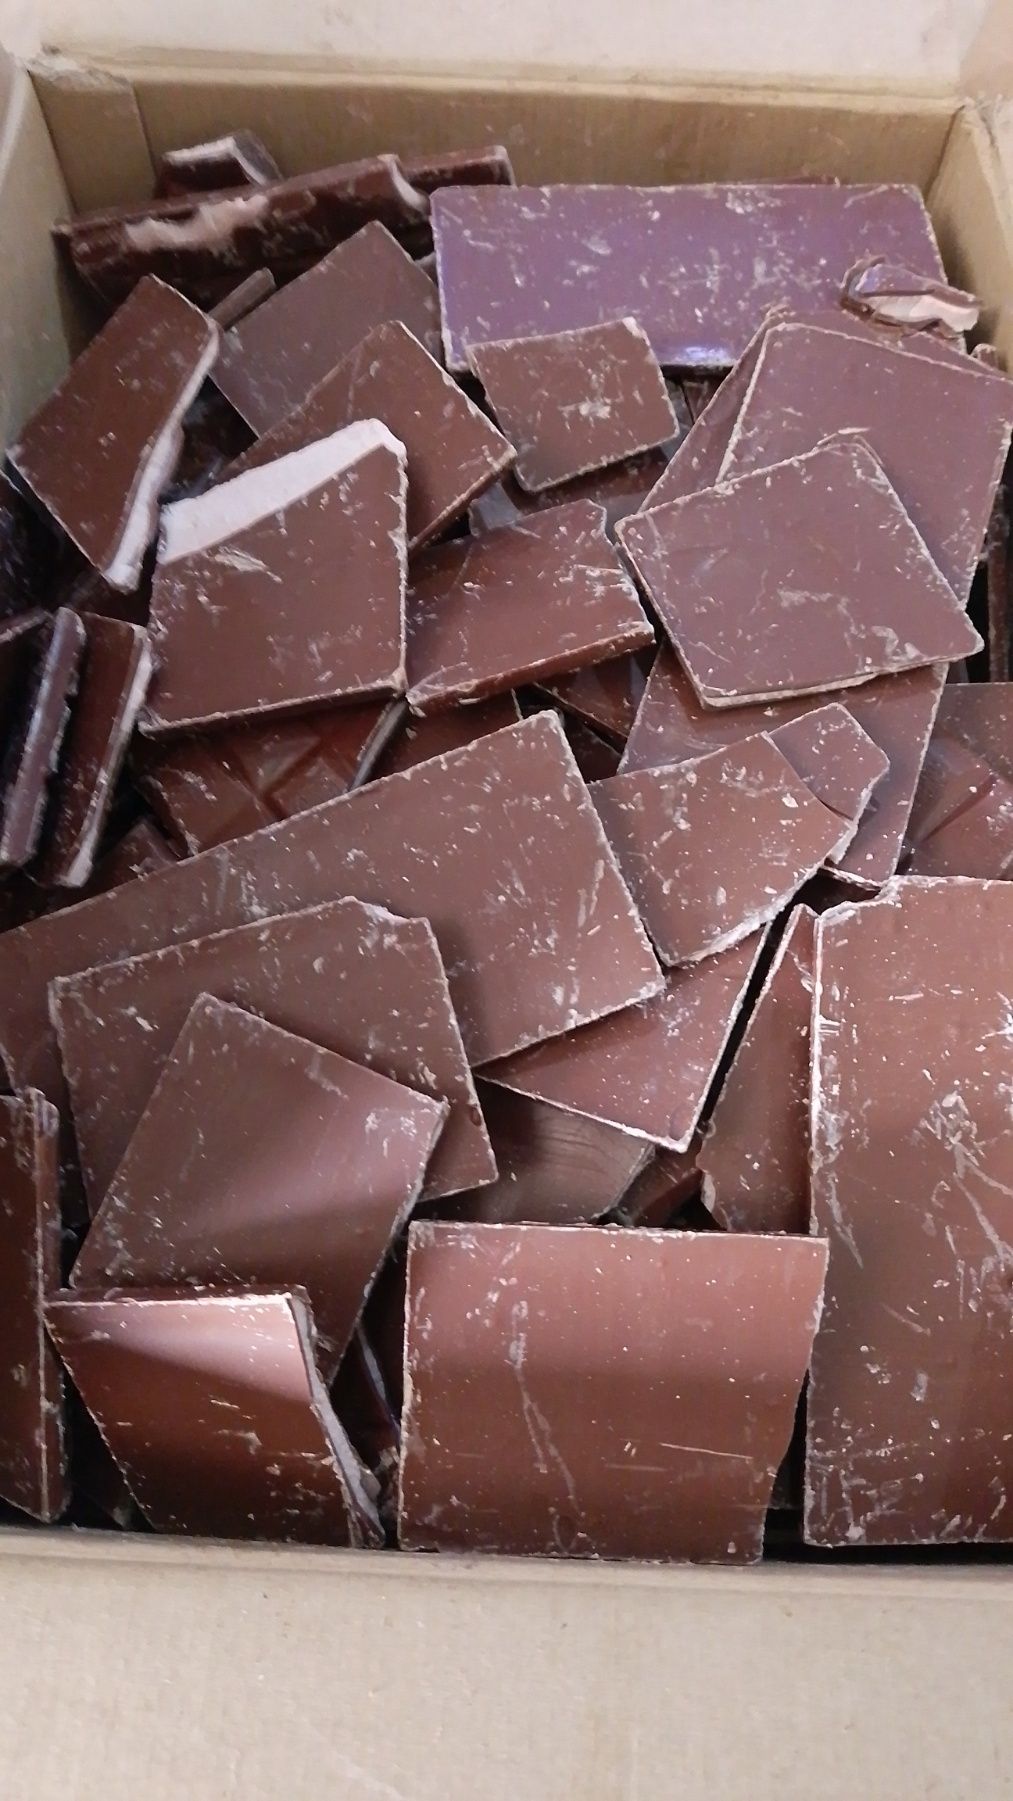 Некондиция шоколад в Вайбер